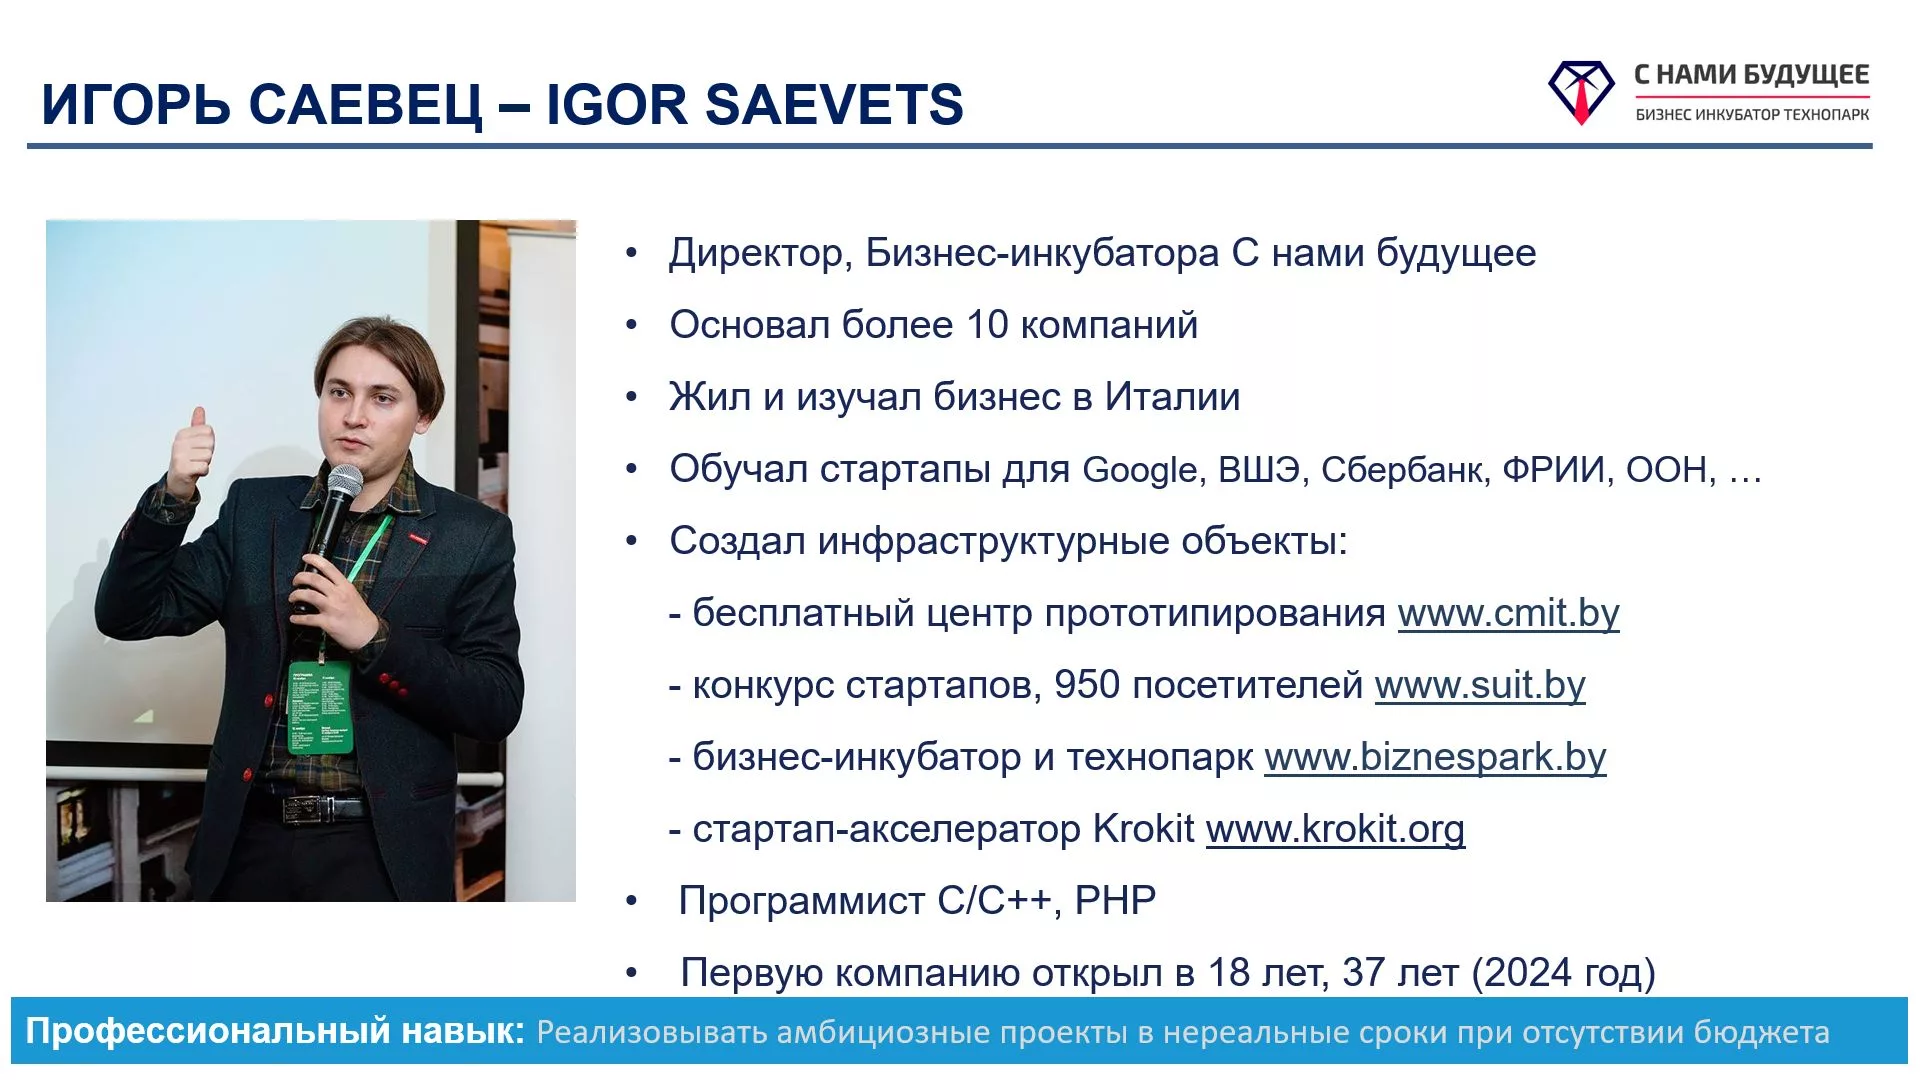 Igor Saevets, Игорь Саевец, ИТ предприниматель, бизнесмен из Беларуси, Минска.